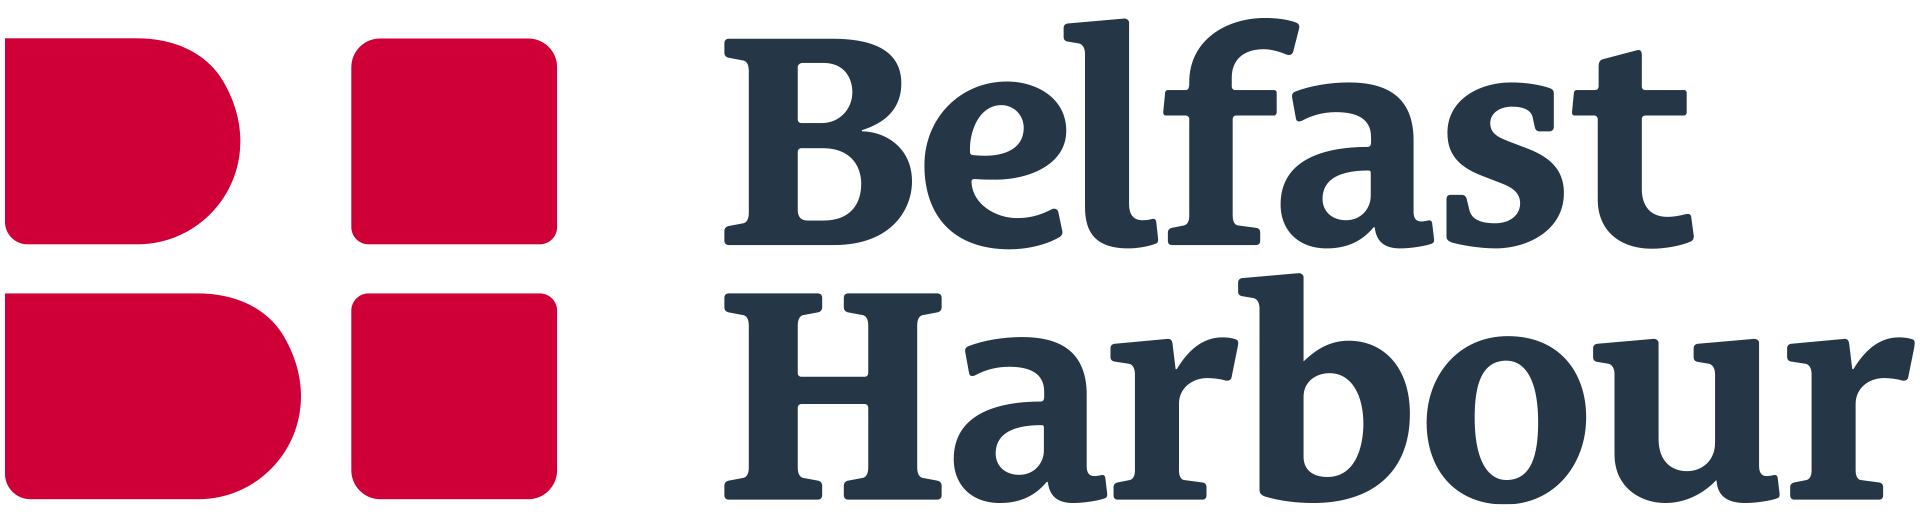 Belfast Harbour logo